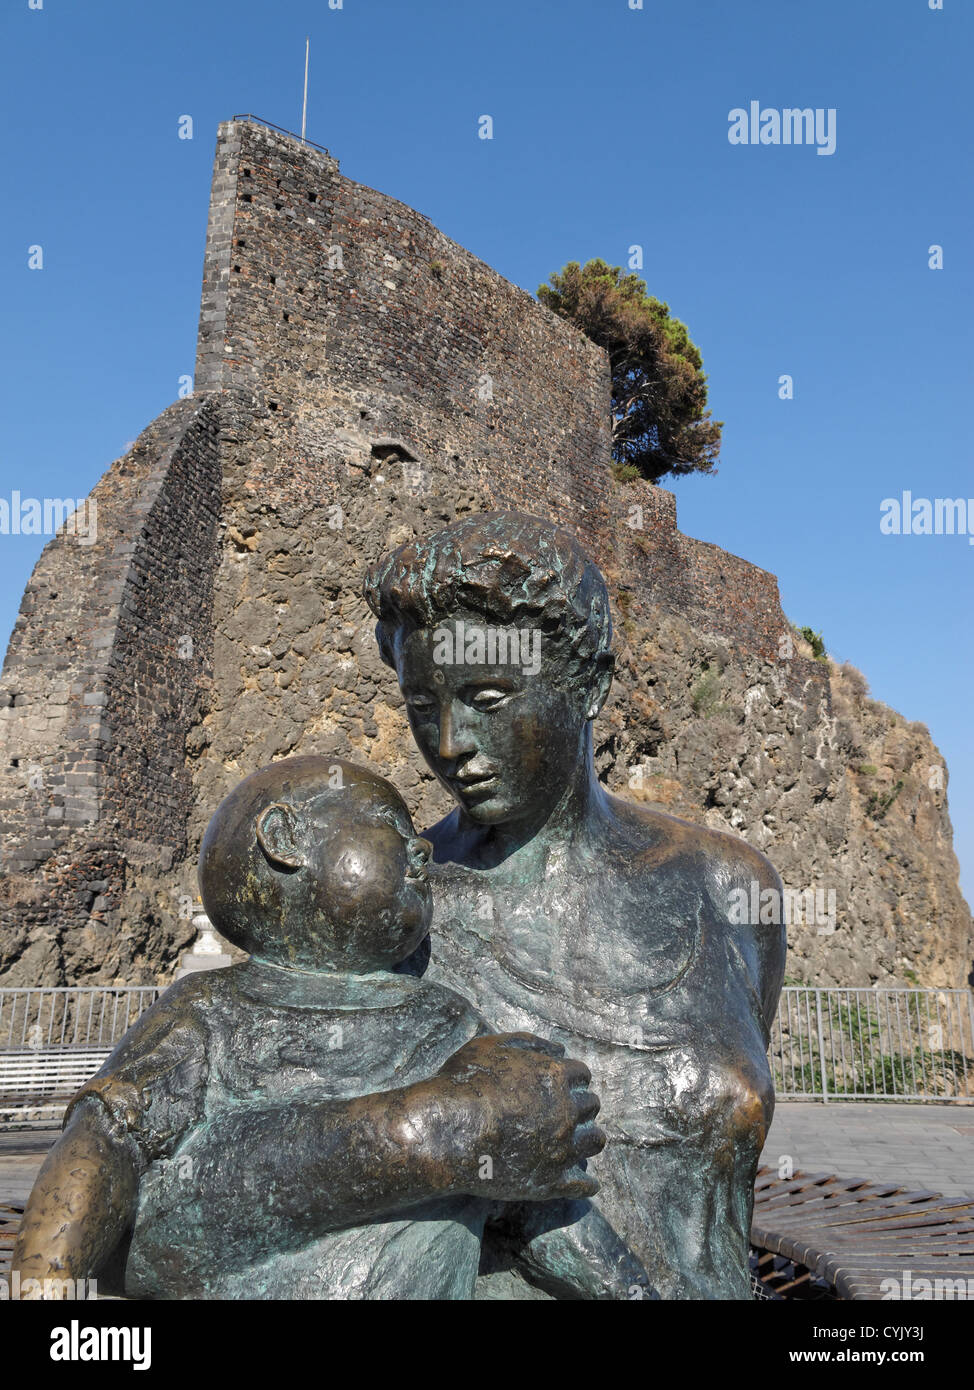 Una statua di una madre e un bambino di fronte al castello normanno a Aci Castello, Sicilia, Italia. Foto Stock